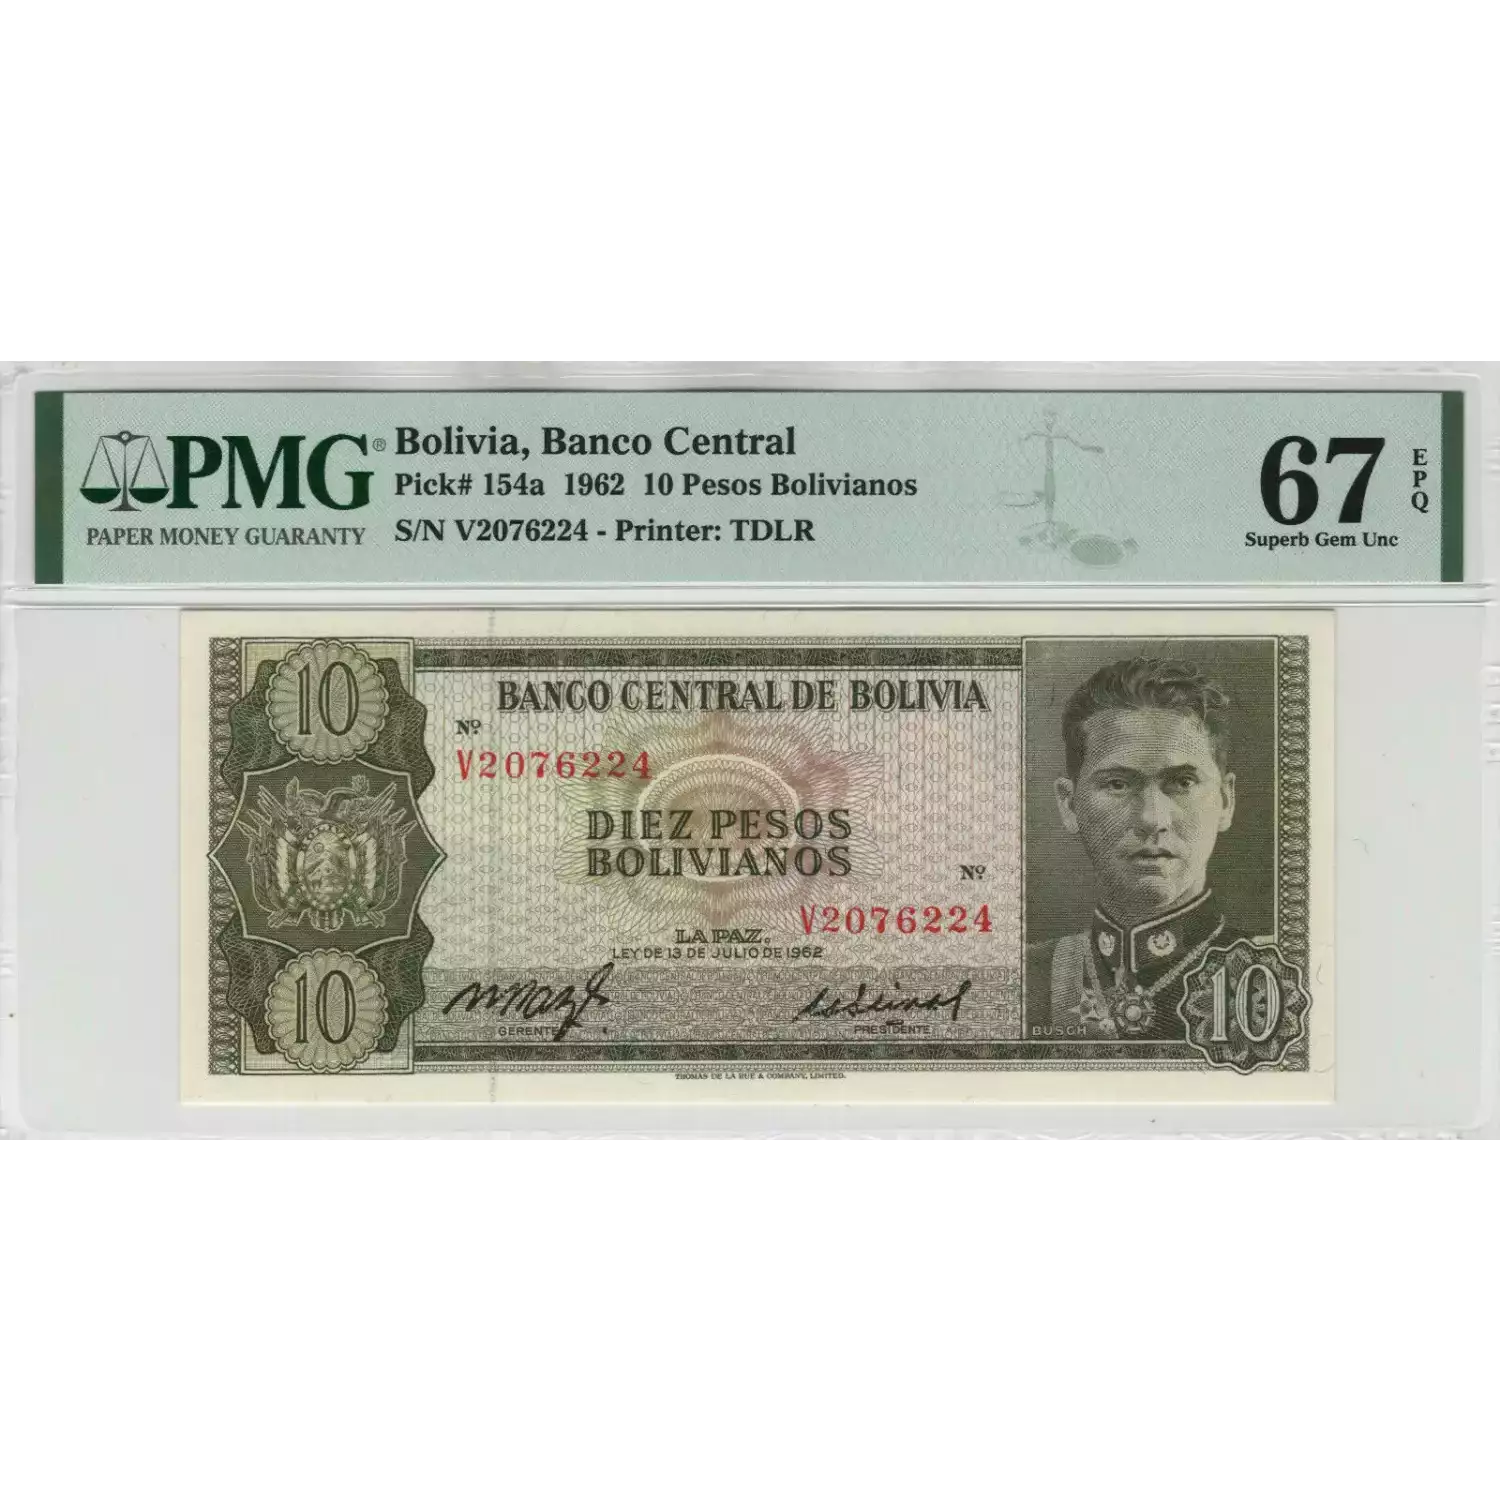 10 Nouveaux Francs L.1962, Ley de 13 de Julio de 1962 - First Issue a. Issued note Bolivia 154